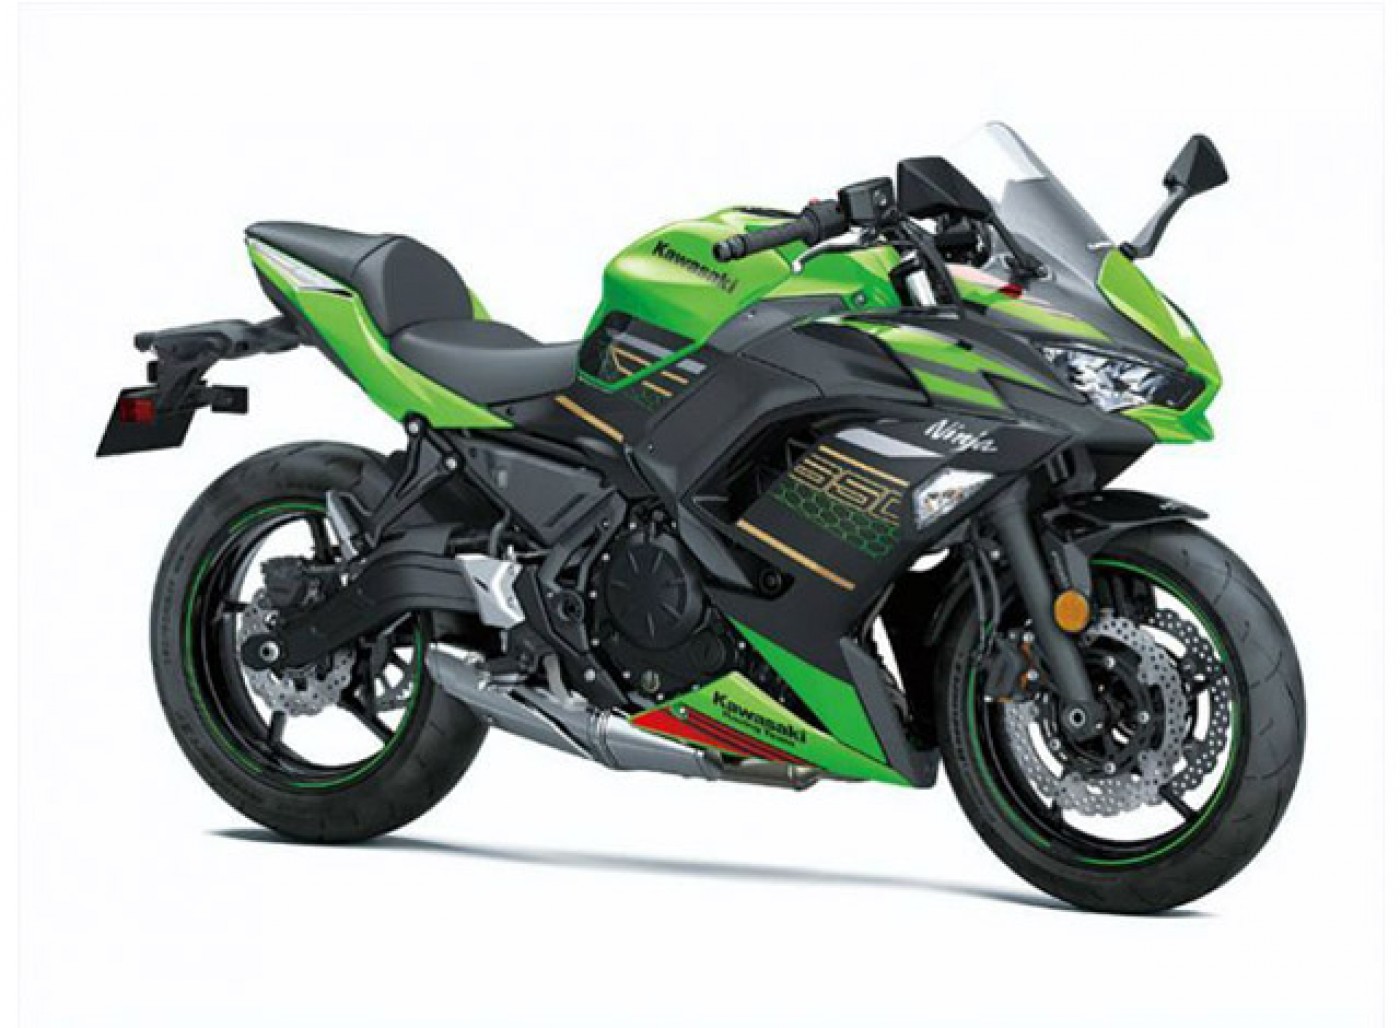 Kawasaki a prezentat Ninja 650 2020